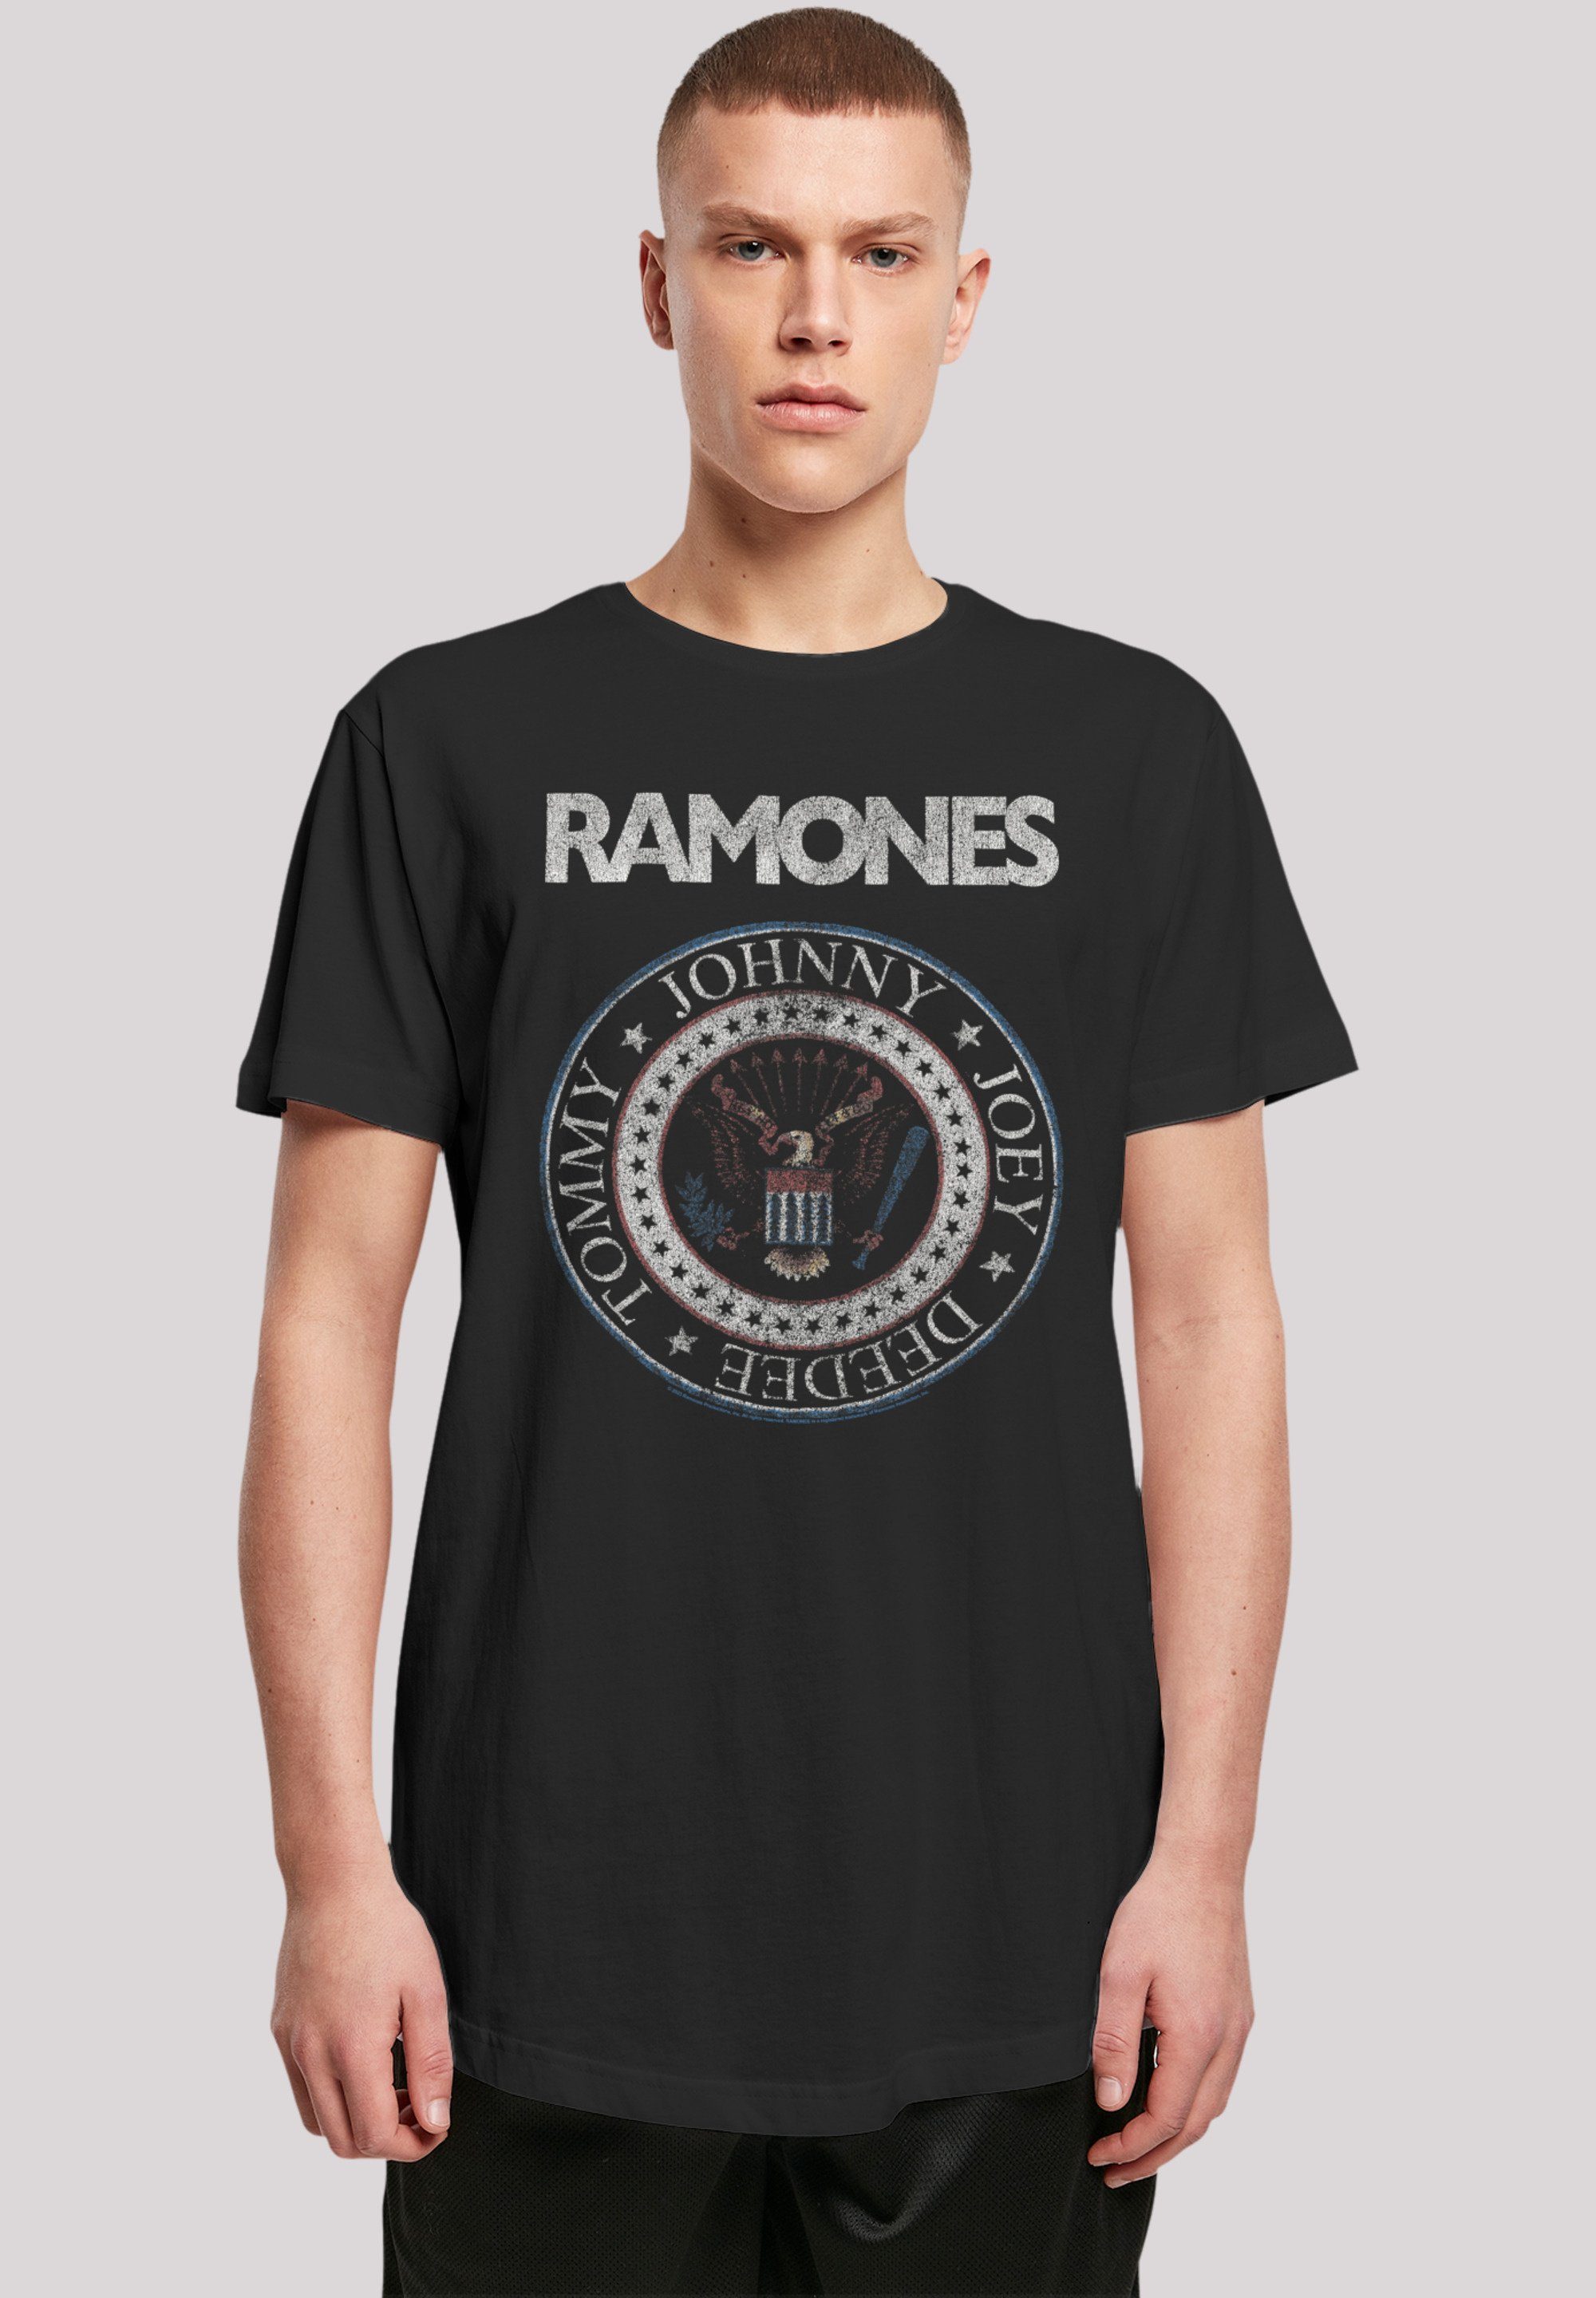 F4NT4STIC T-Shirt Ramones hohem Premium mit Red weicher Rock-Musik, Qualität, And Tragekomfort Seal Rock Musik Sehr White Baumwollstoff Band, Band